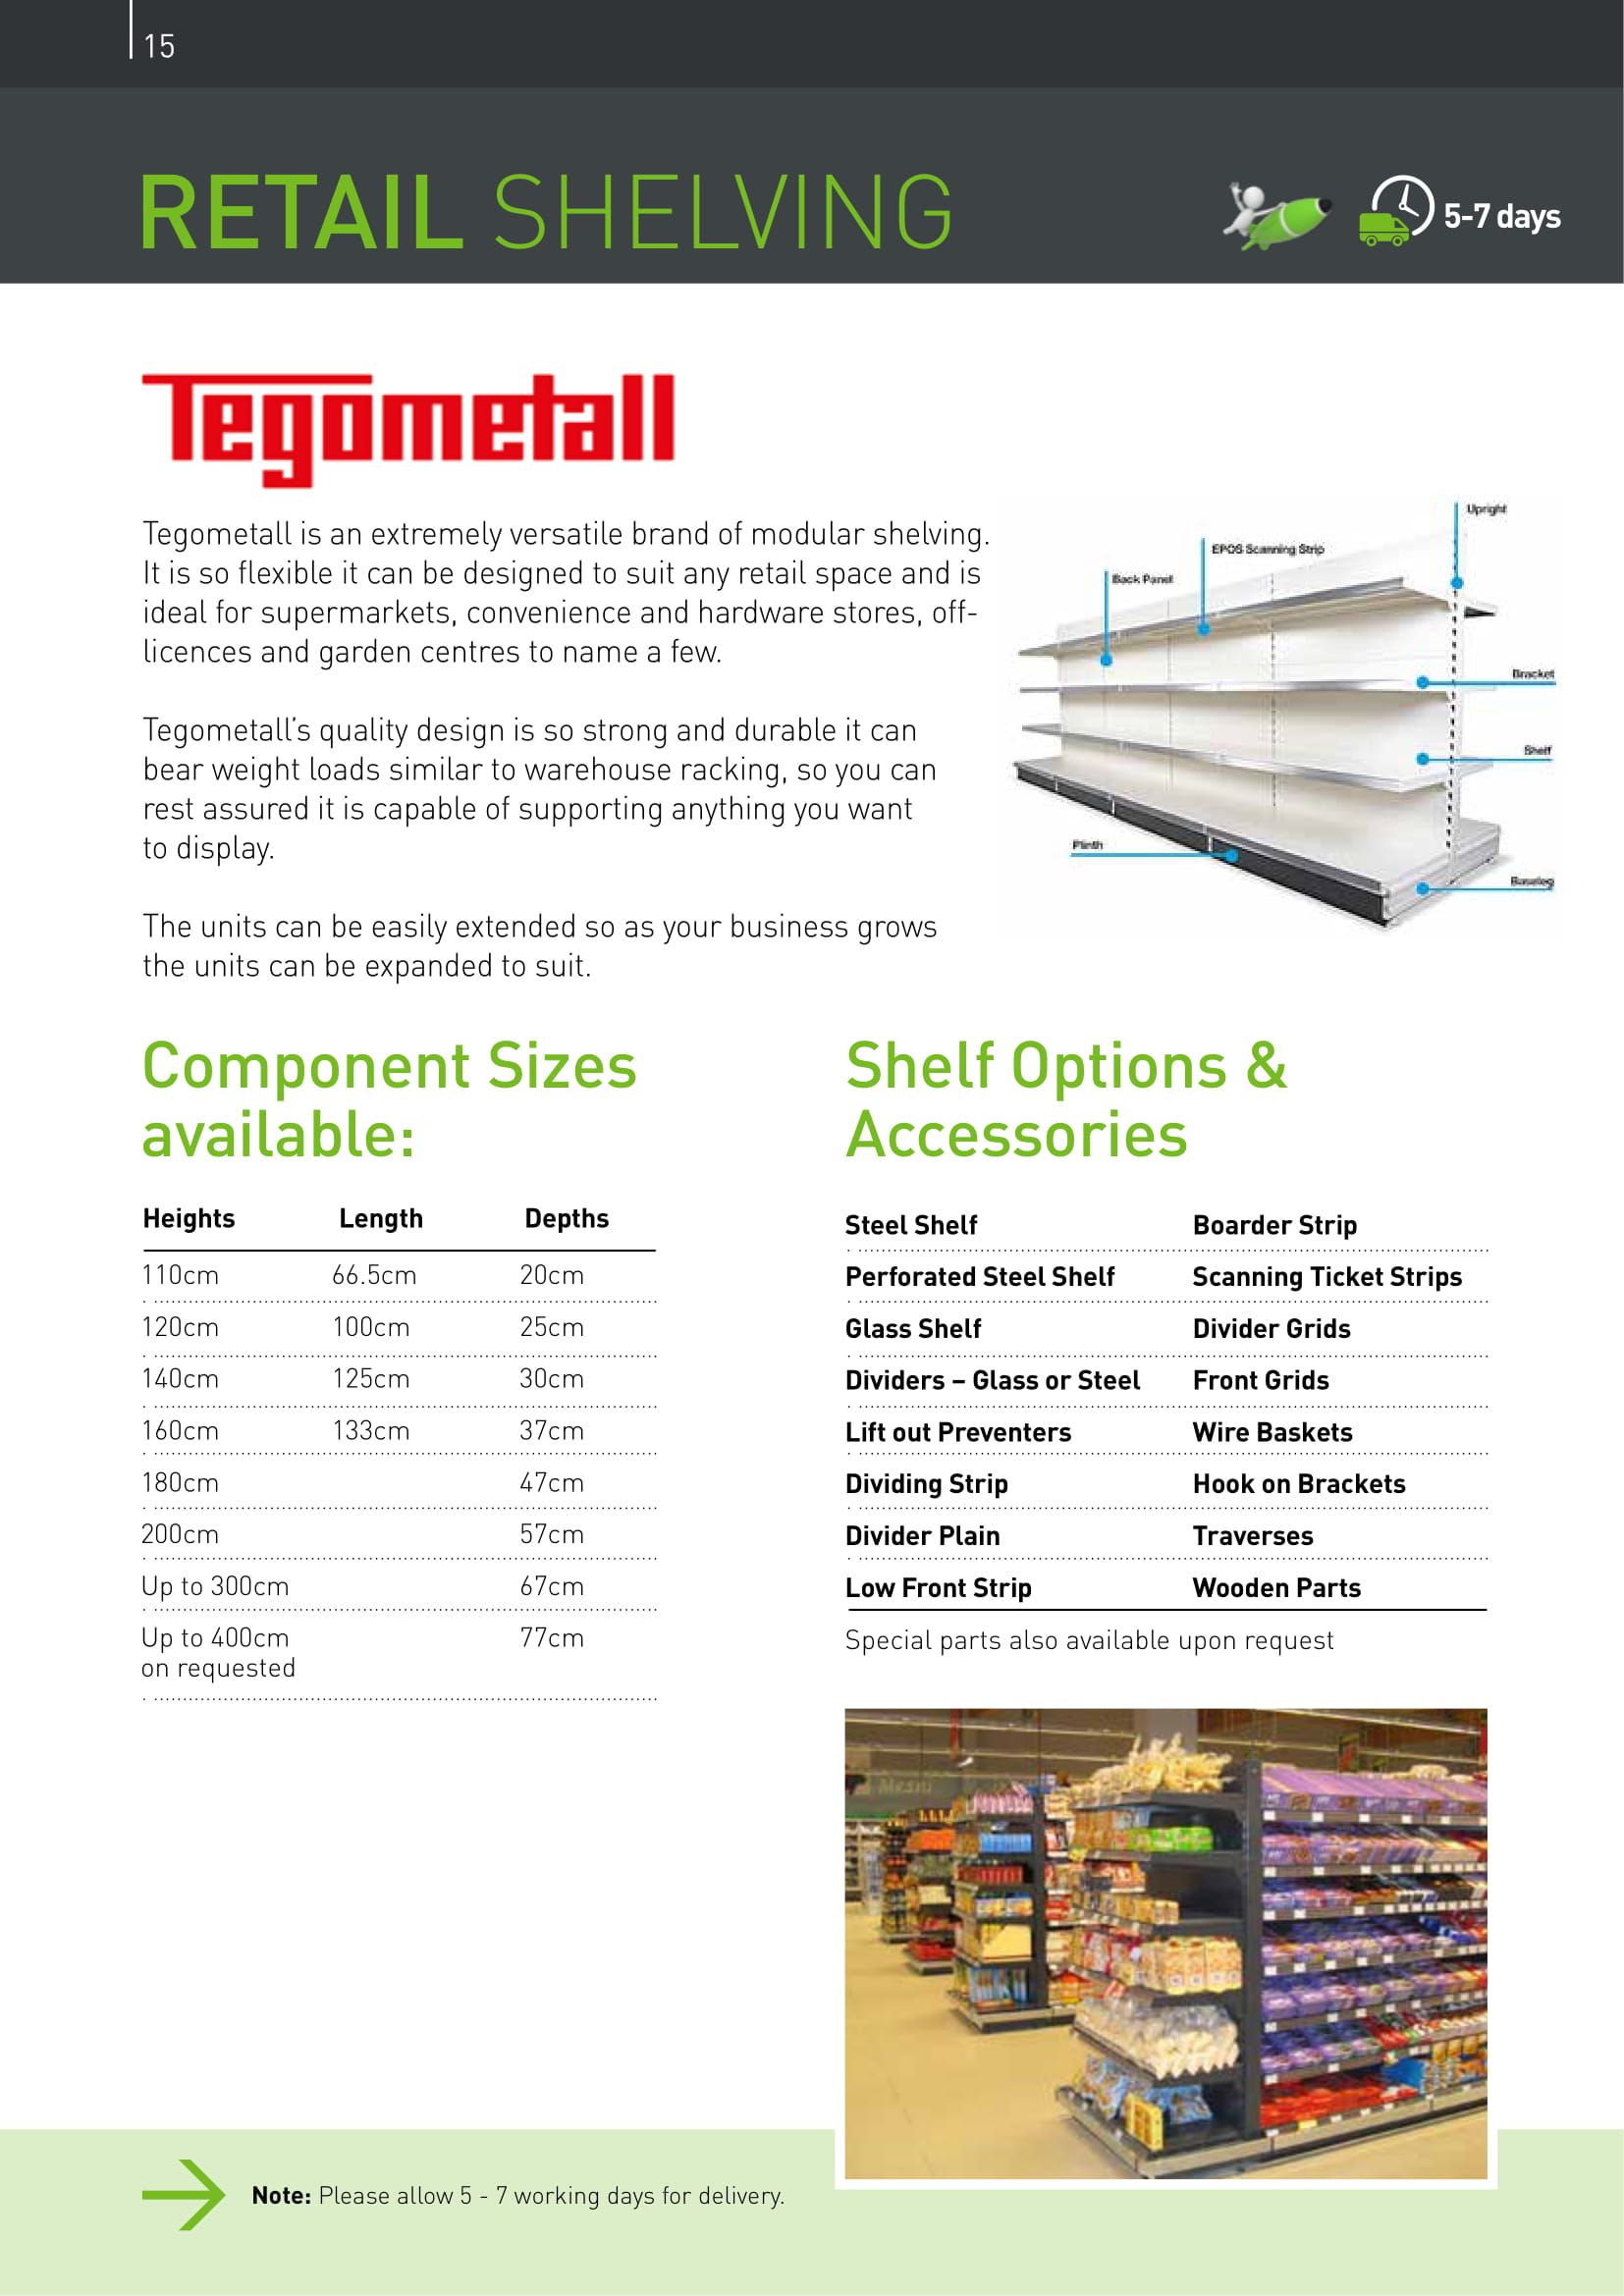 Retail shelving brochure page showcasing Tegometall shelving